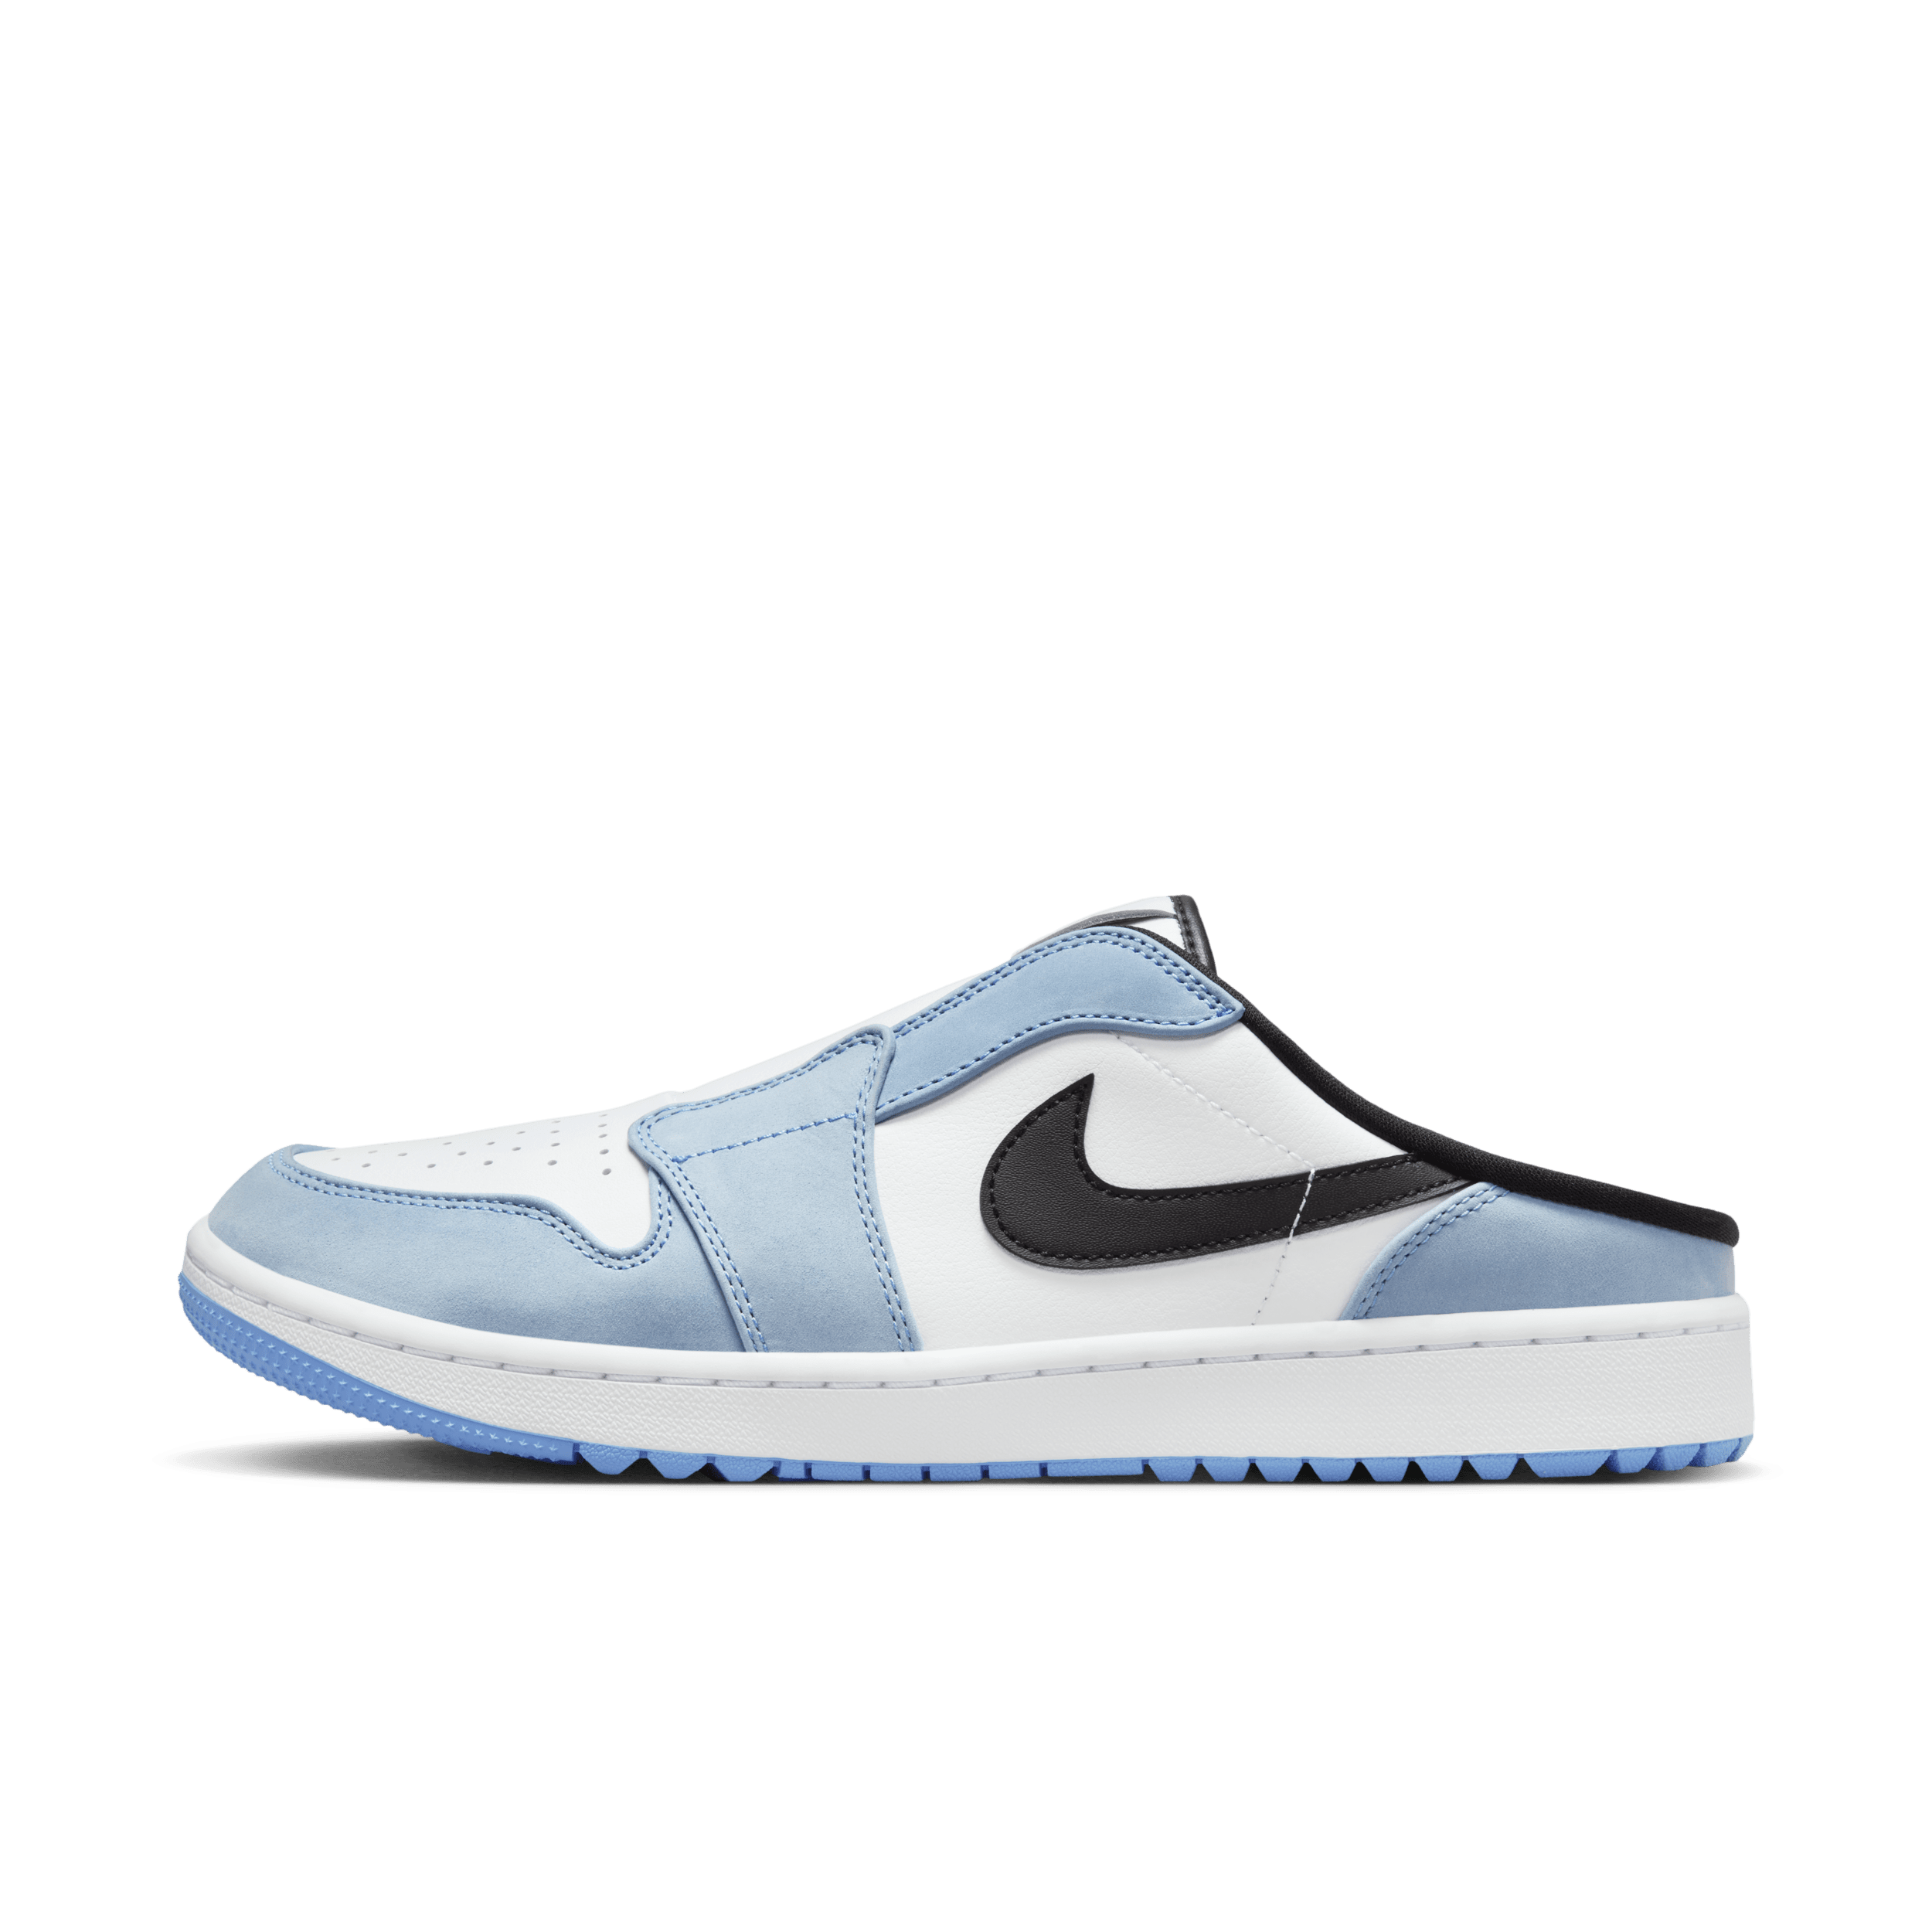 Air Jordan Mule Zapatillas de golf - Azul